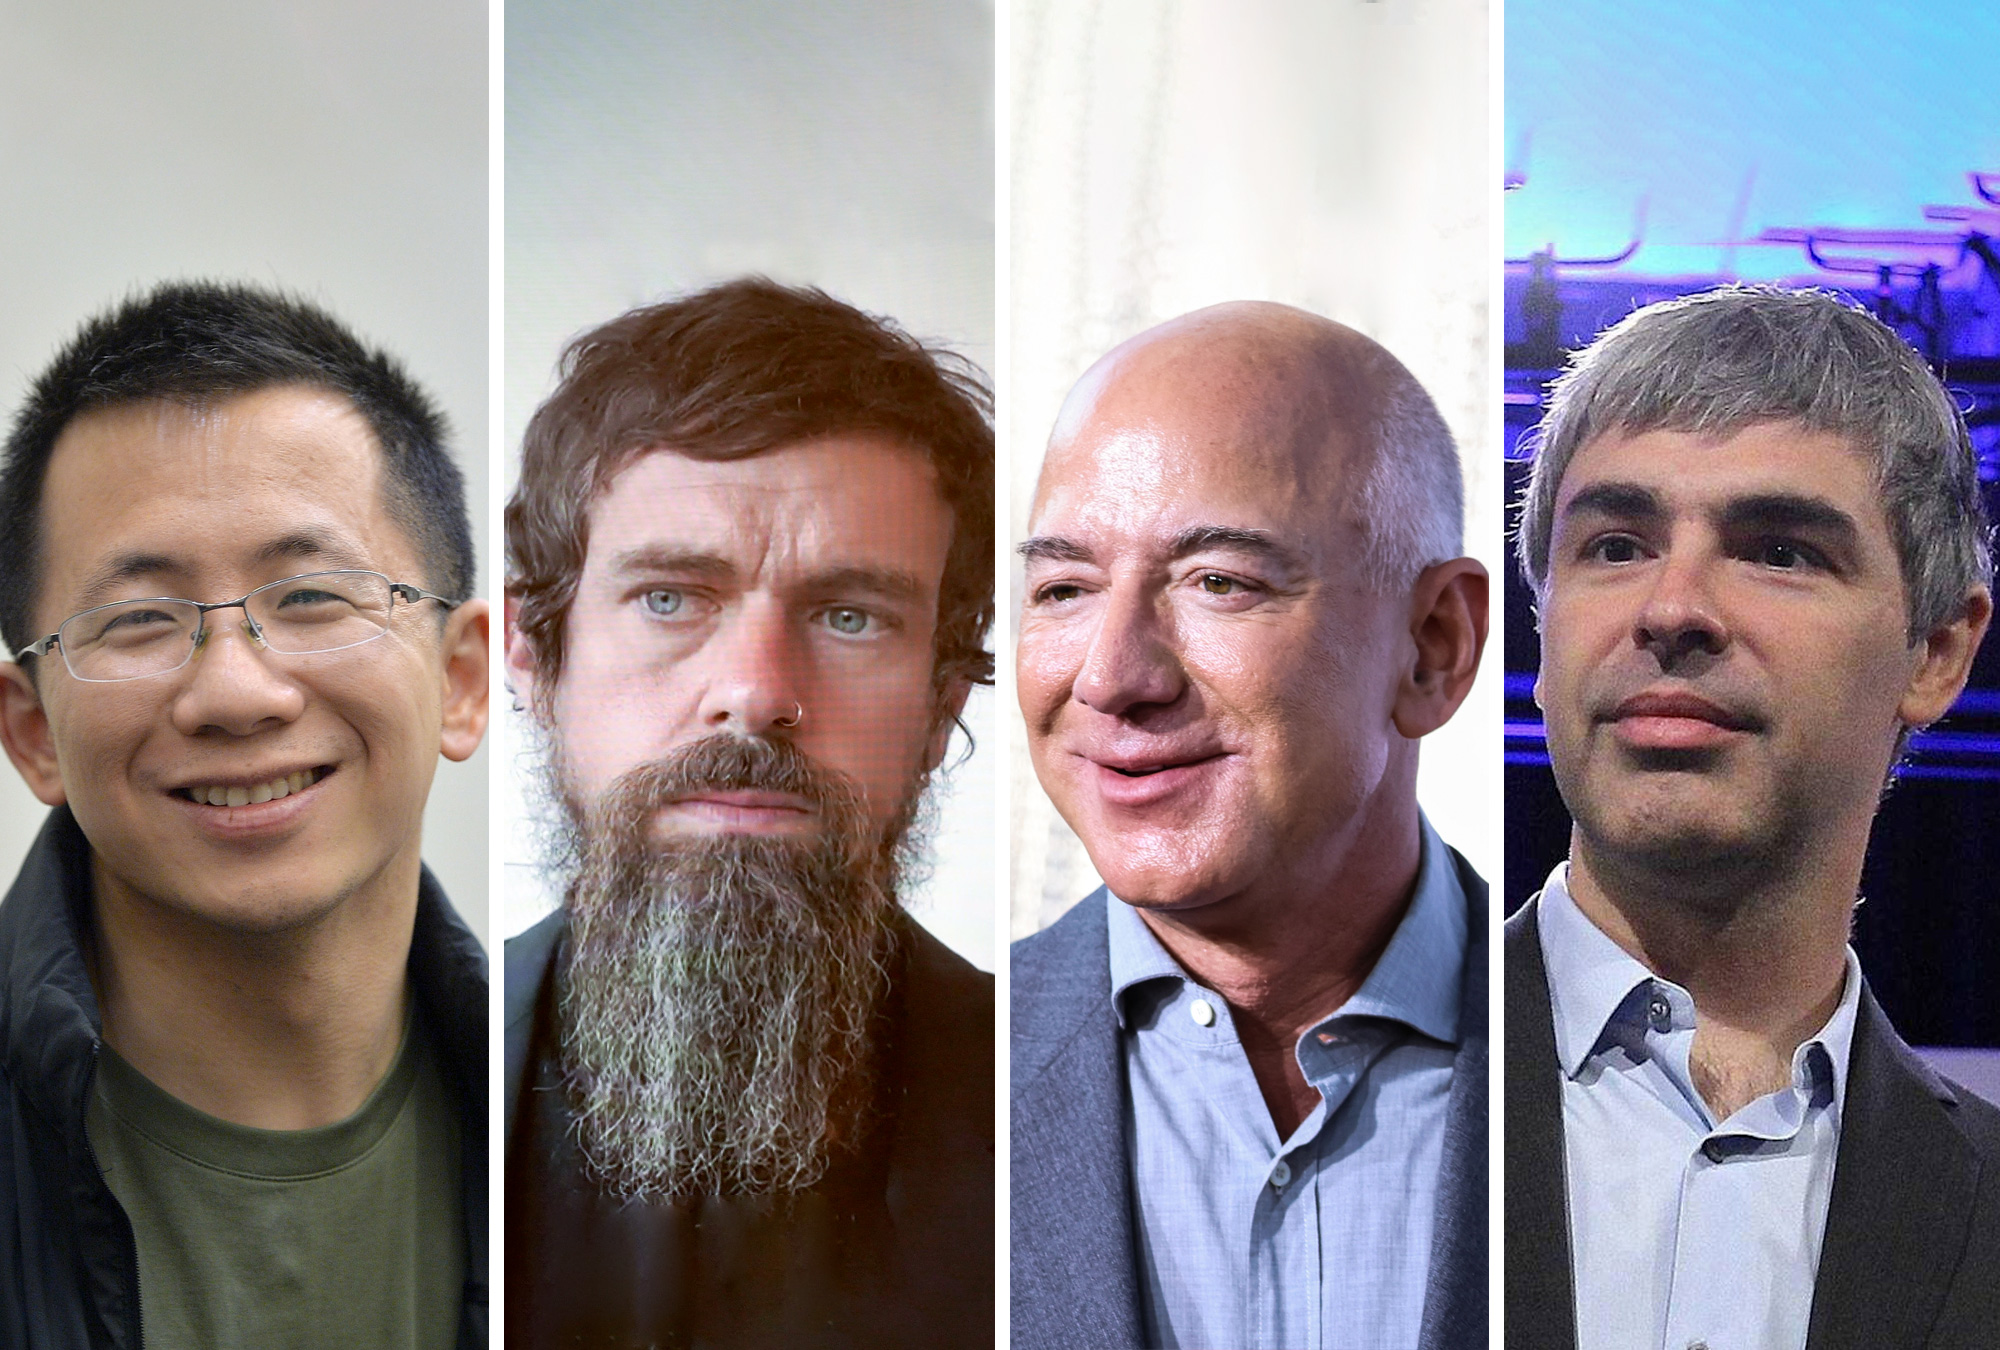 Zhang Yiming, Jack Dorsey, Jeff Bezos y Larry Page. Los fundadores de las empresas tecnológicas que ya no son CEO.